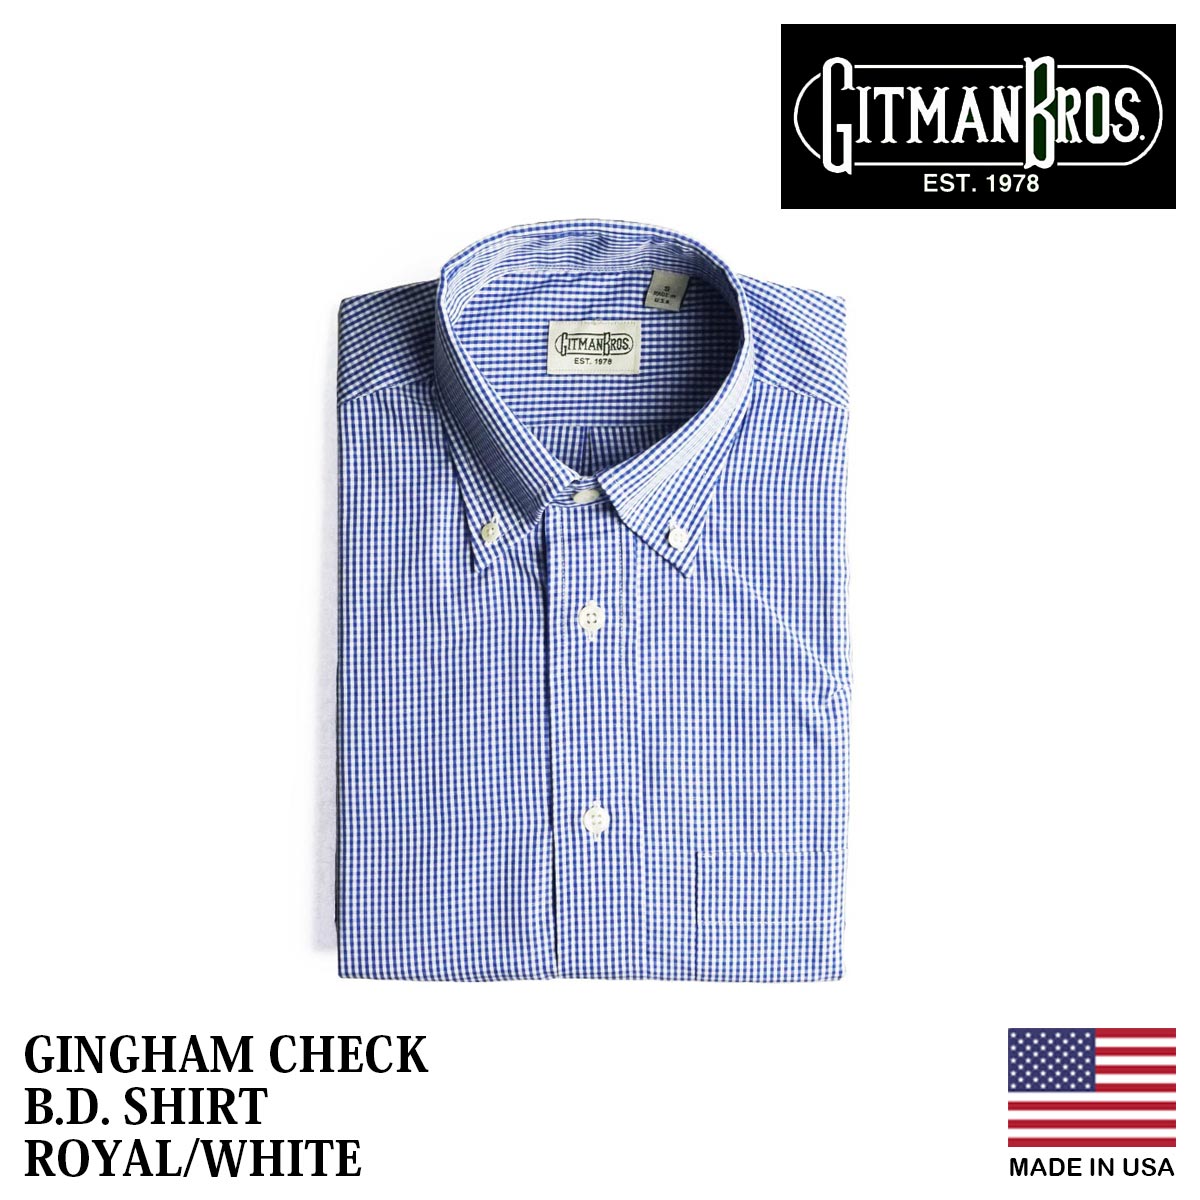 ギットマン ブラザーズ Gitman Bros. ギンガムチェック ボタンダウンシャツ ロイヤル/ホワイト アメリカ製 米国製 GINGHAM